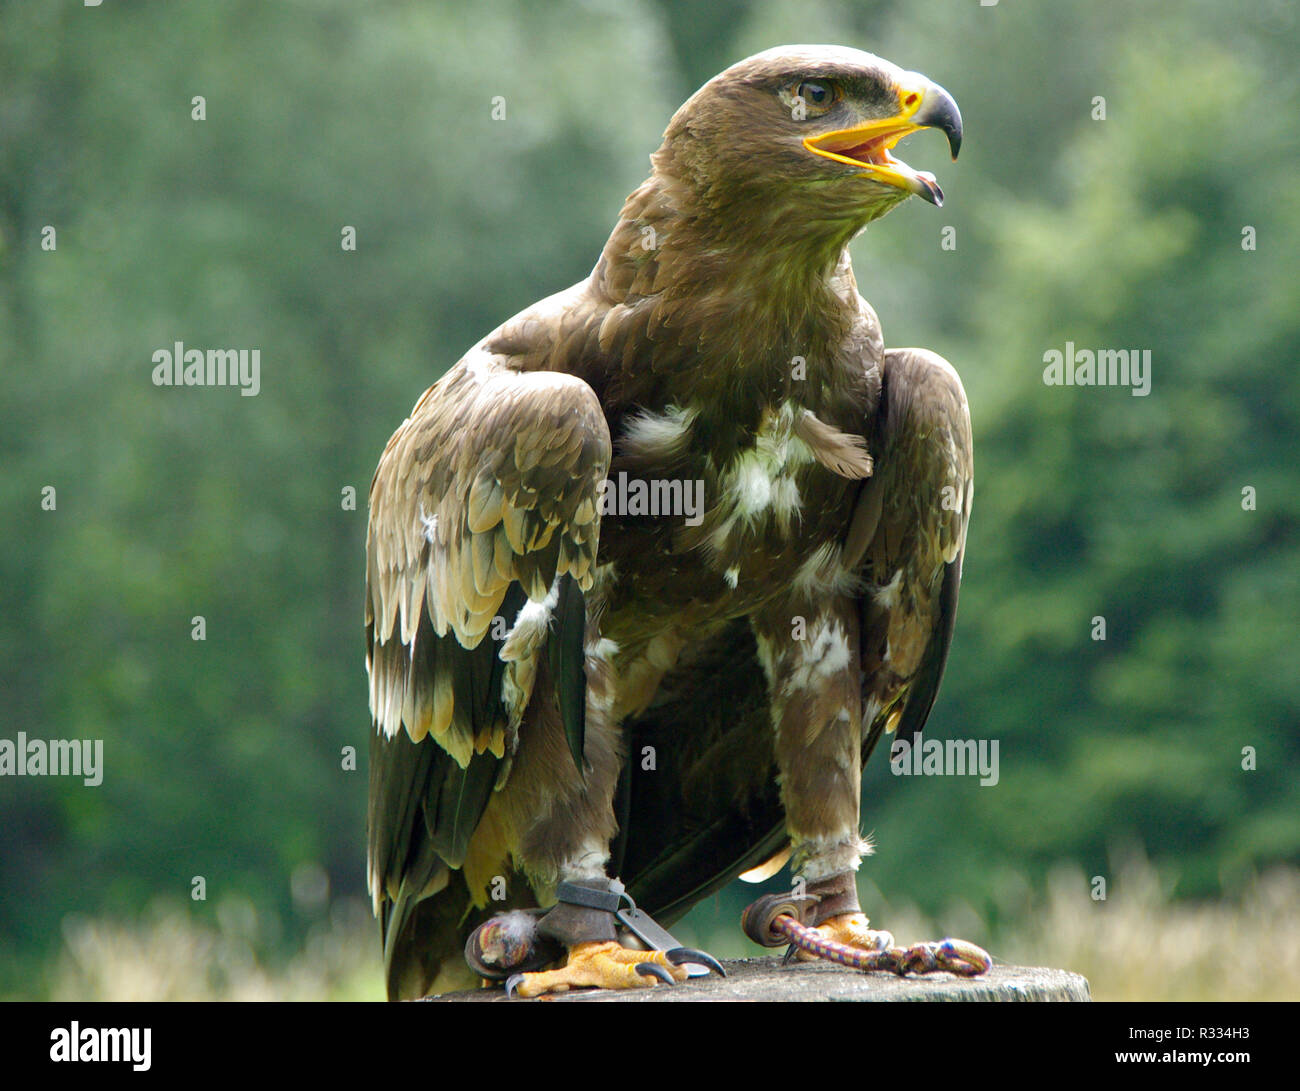 Weisskopf águila de cola blanca Adler perchas imagen térmica a4 a5 a6 aplicación flexfolie 